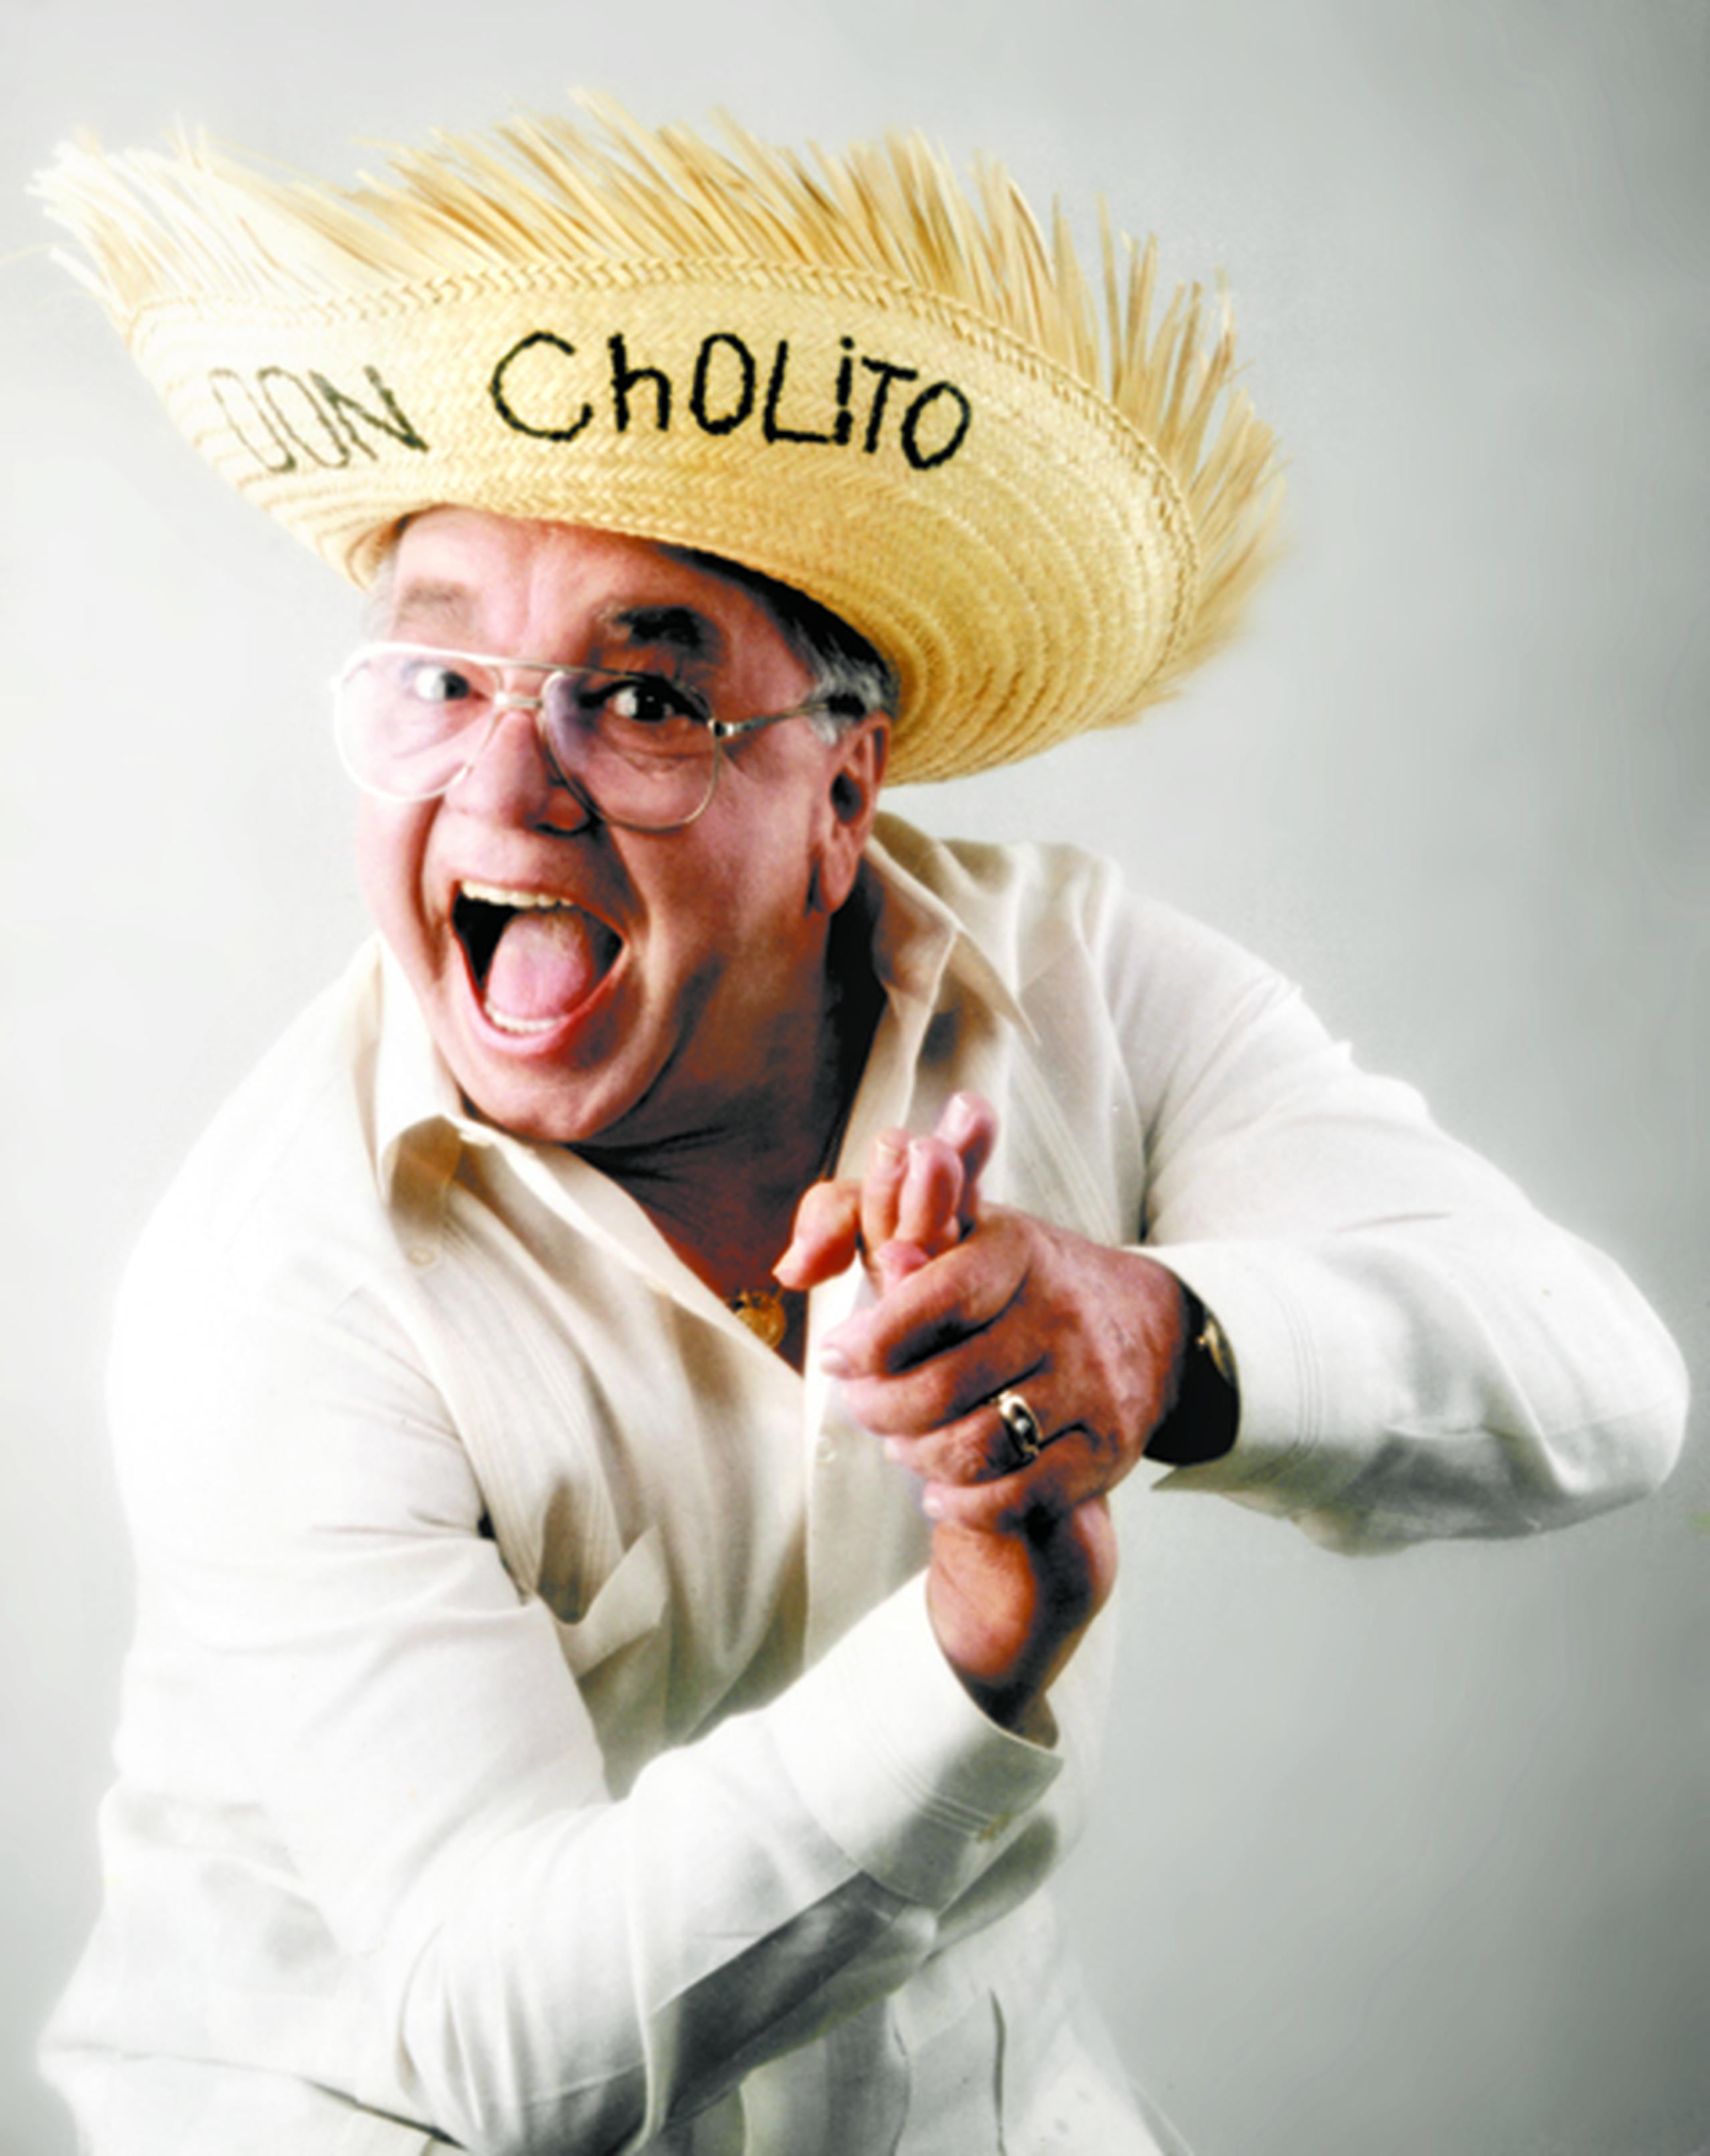 El personaje "Don Cholito" quedó en la memoria del país entre los más queridos de la televisión puertorriqueña.